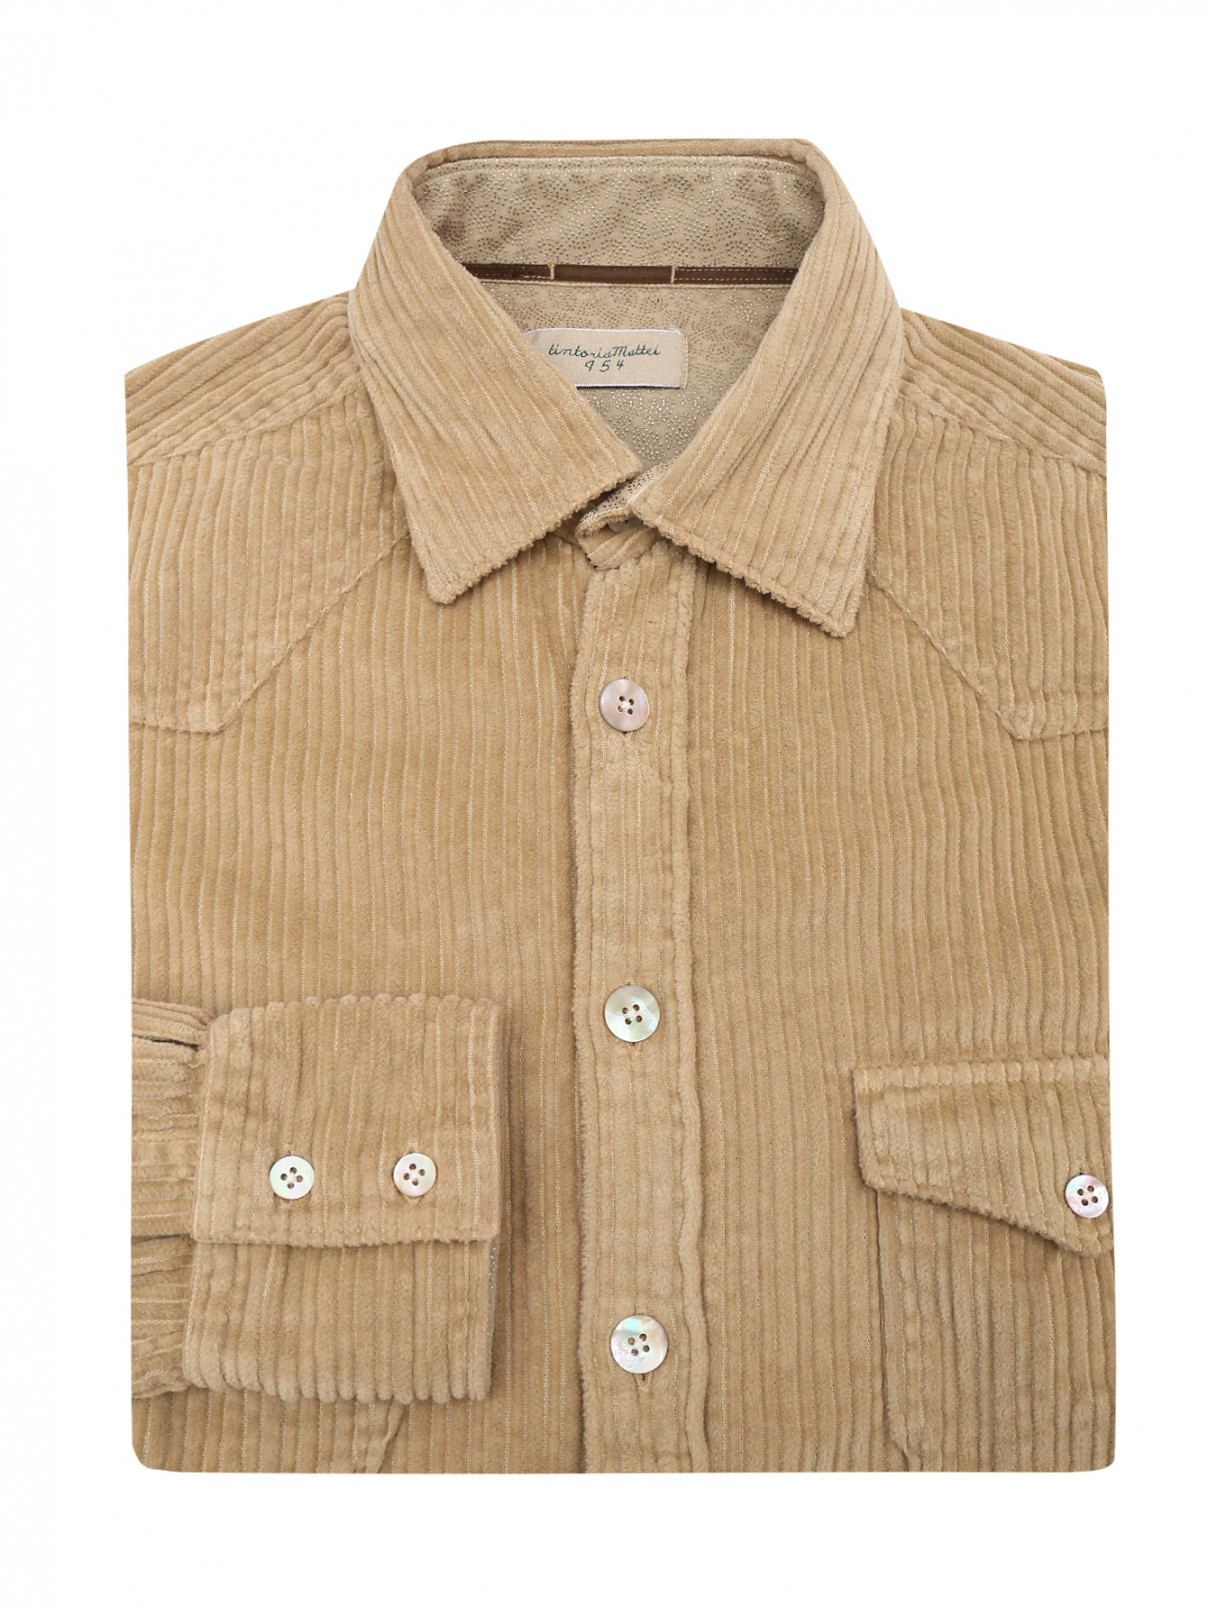 Вельветовая рубашка с накладными карманами Tintoria Mattei  –  Общий вид  – Цвет:  Бежевый